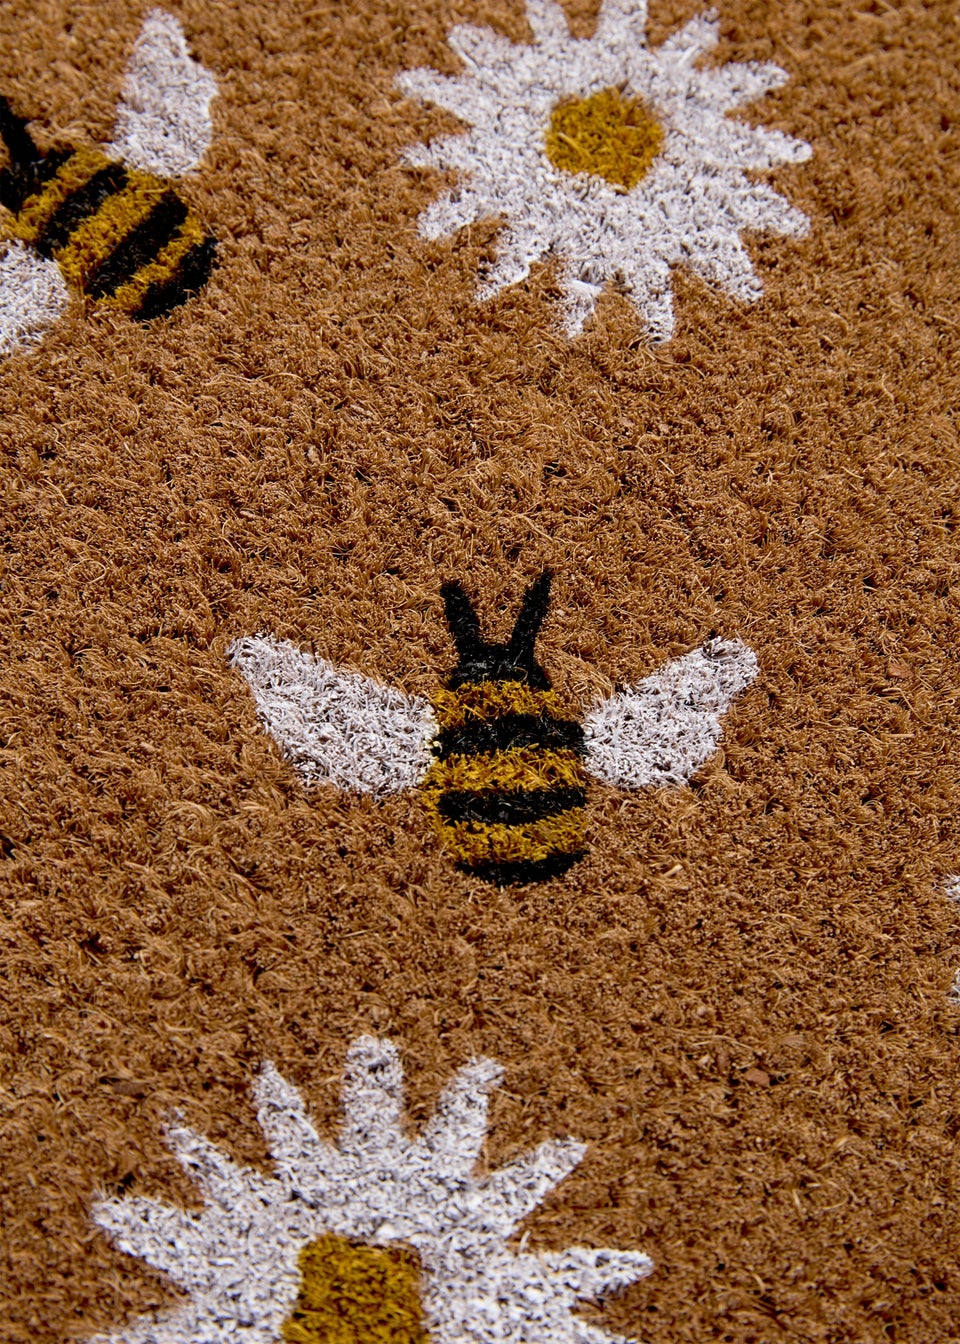 Daisy Bee Doormat (60cm x 40cm)